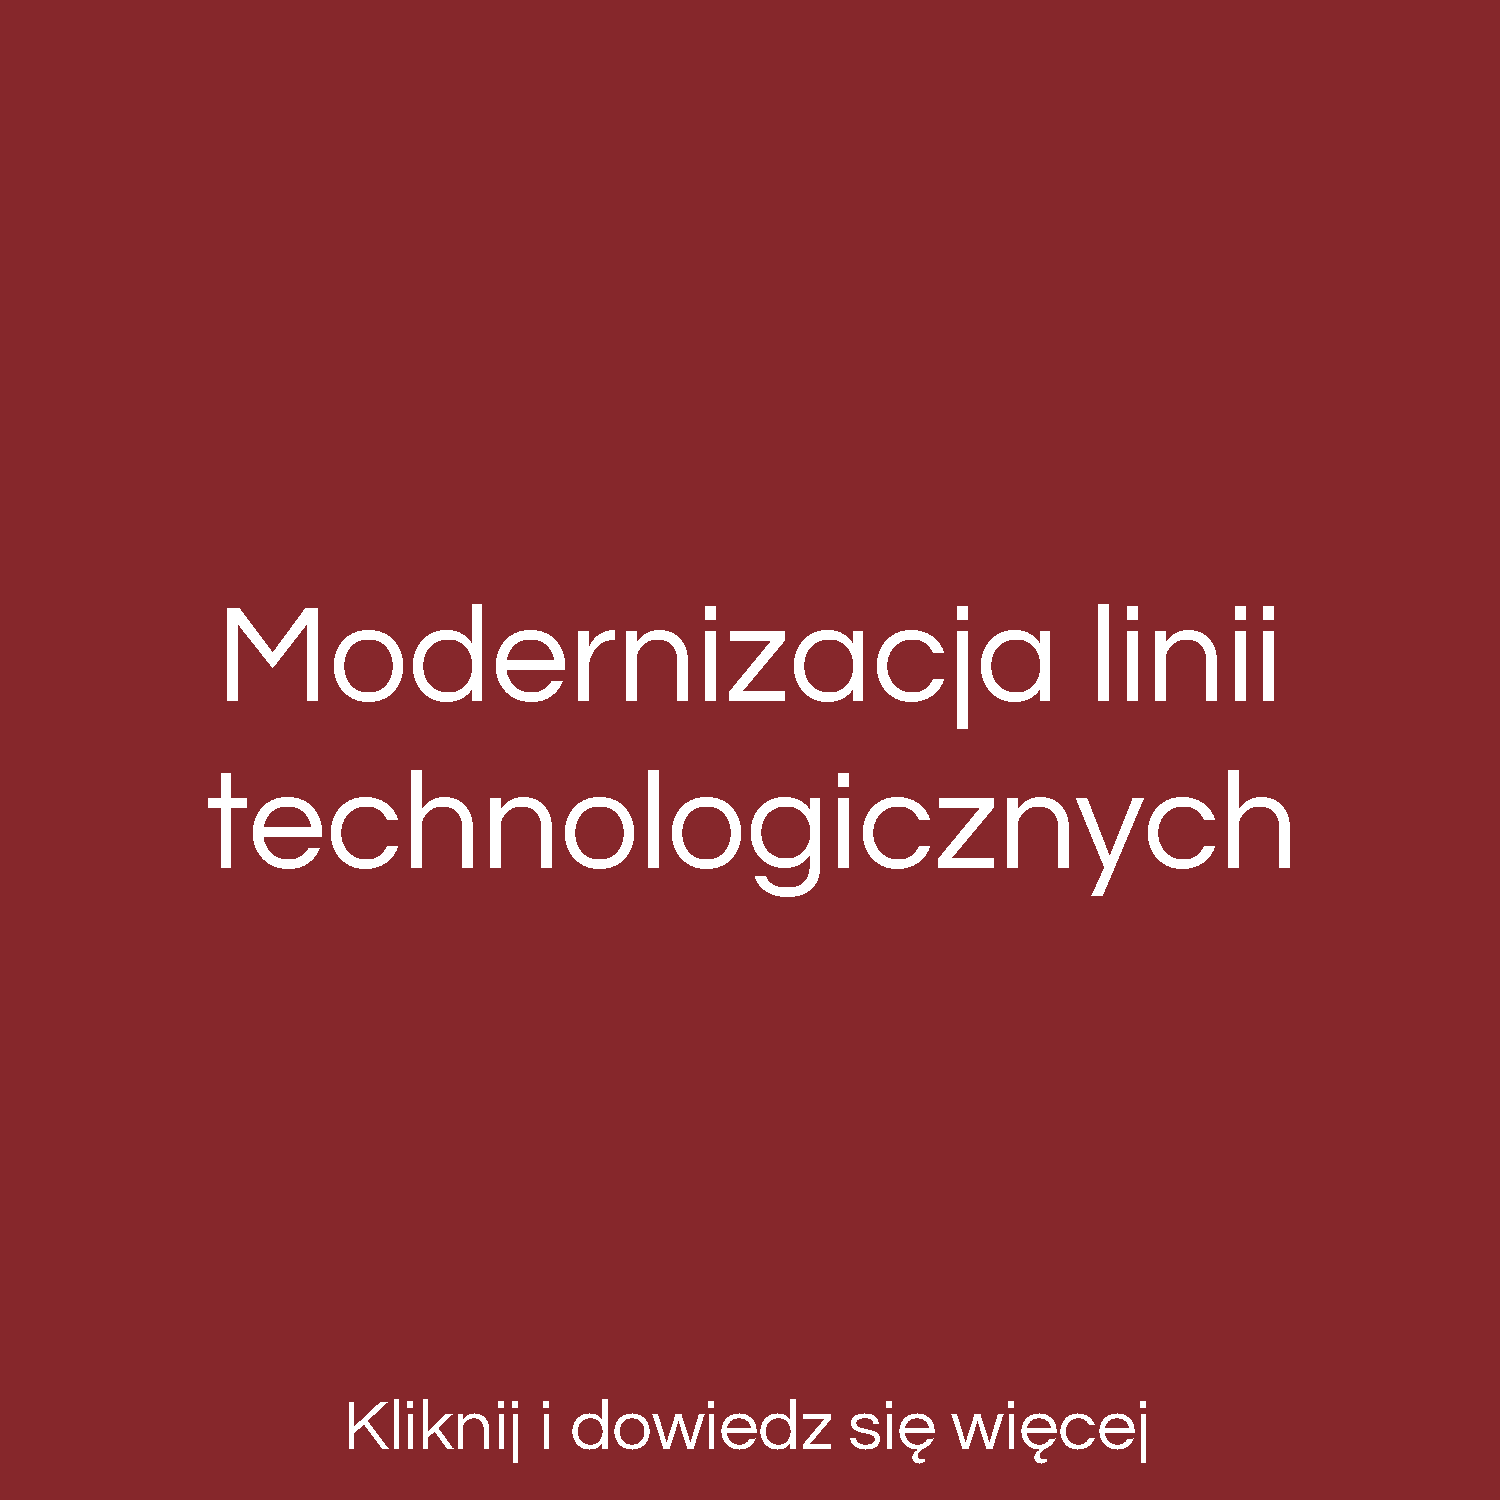 Modernizacja linii technologicznych Lubliniec